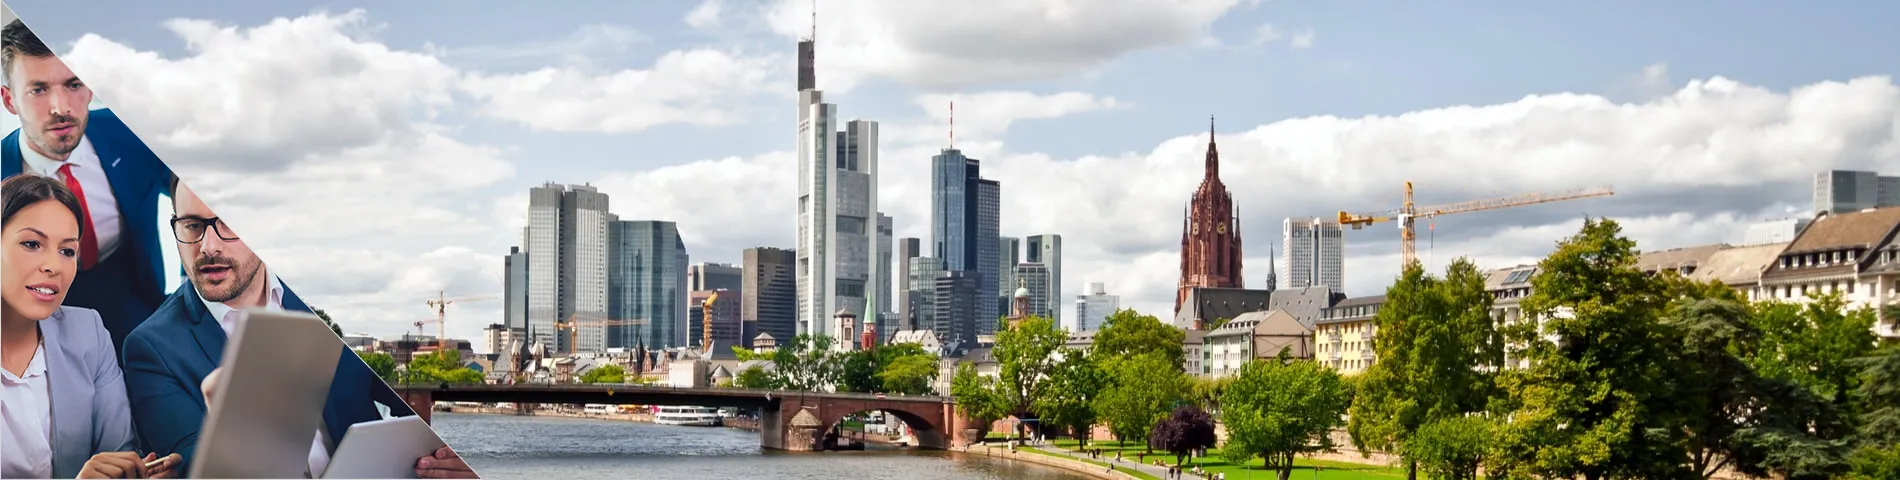 Frankfurt - Standardní a obchodní kombi skupina